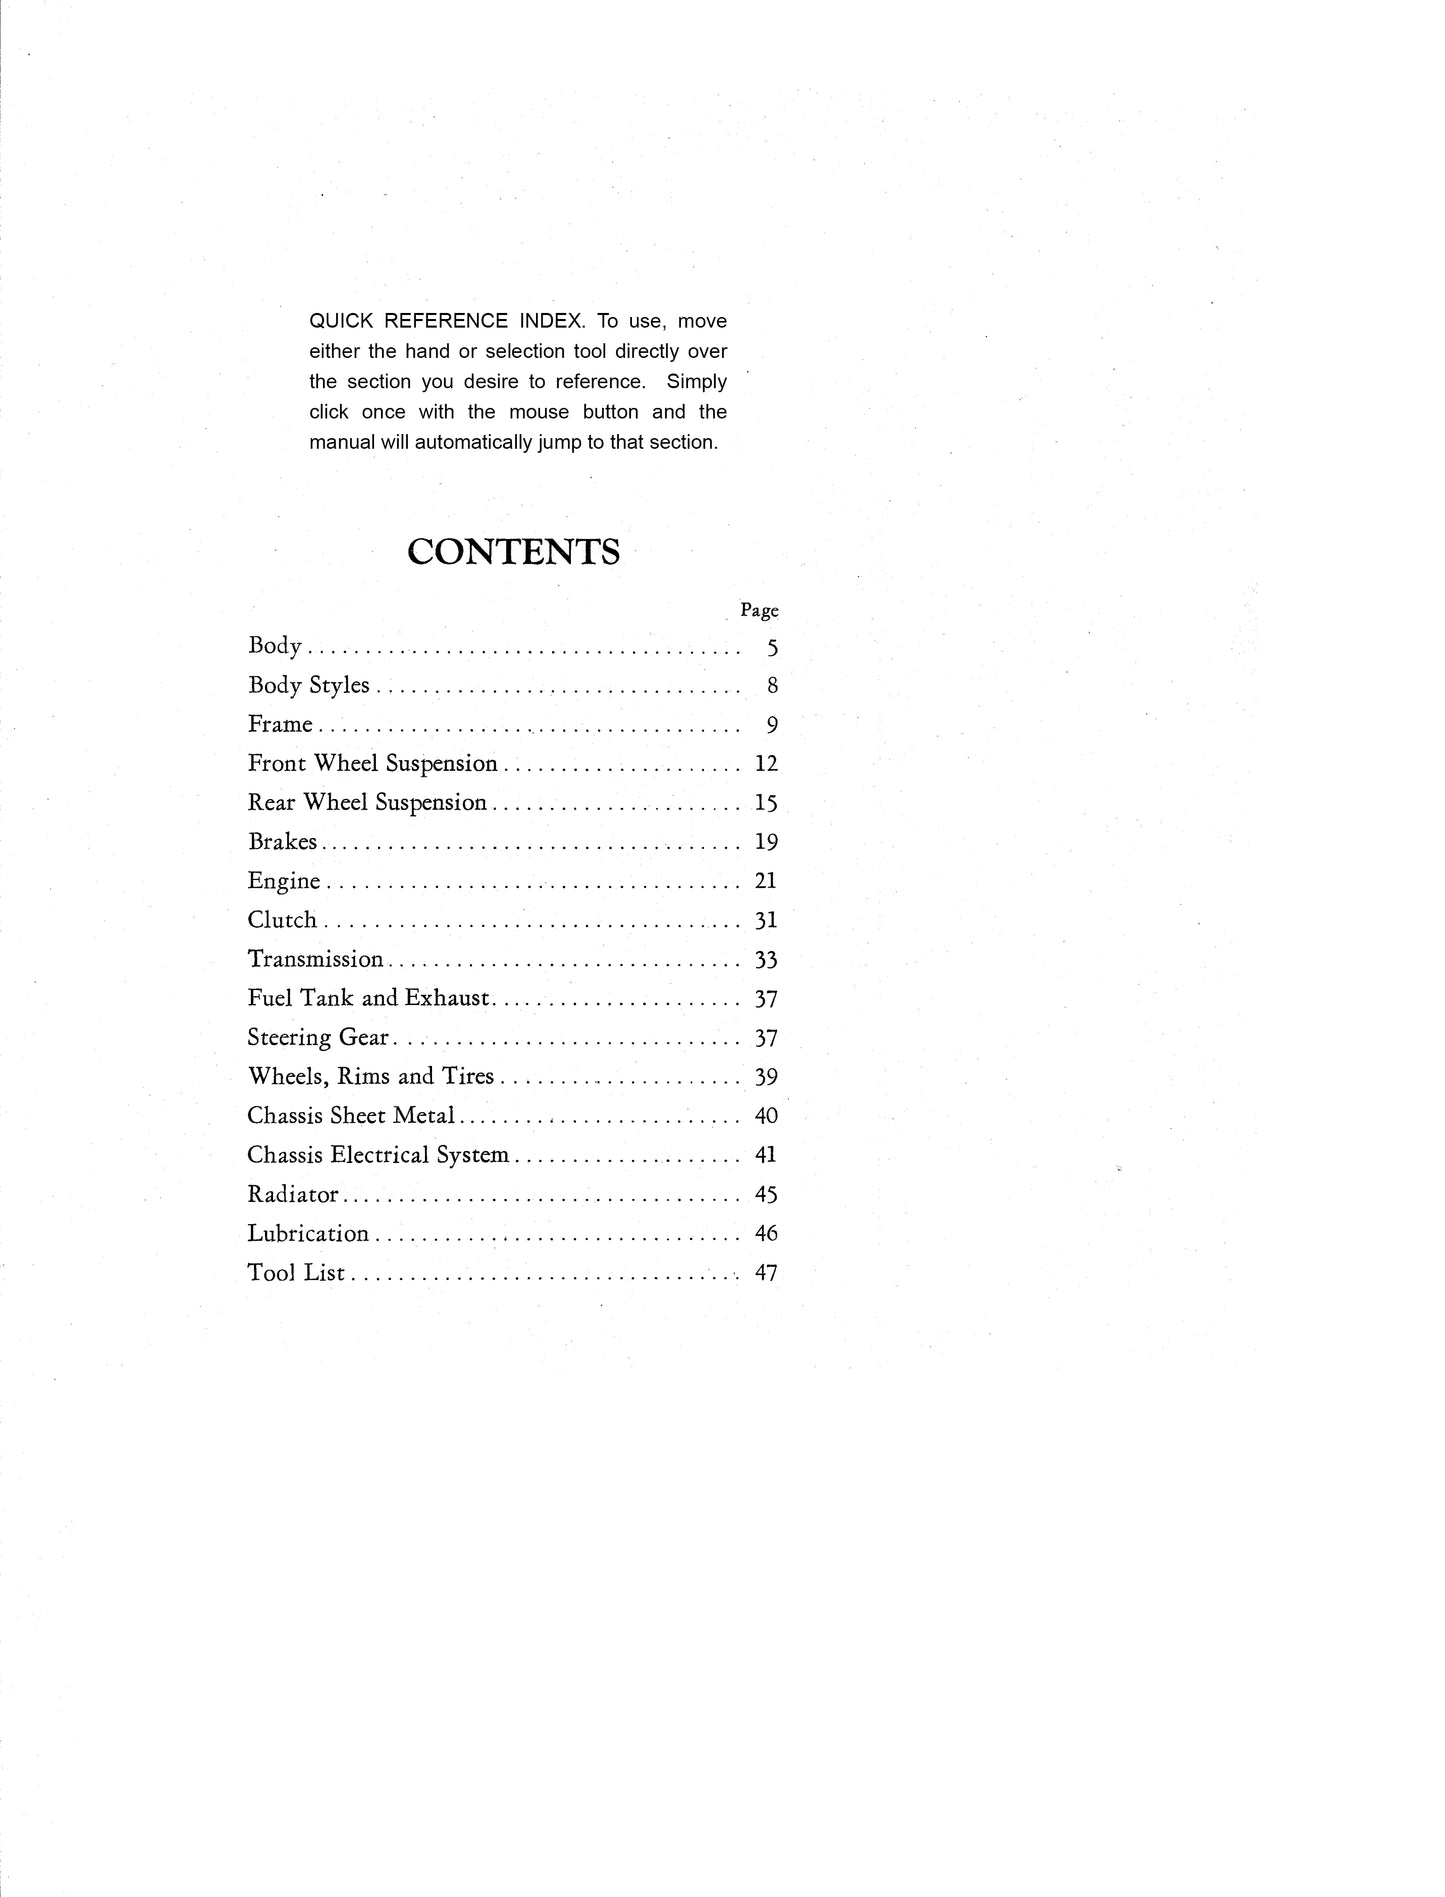 1937-1938 Cadillac & Lasalle Repair Manual - All Models